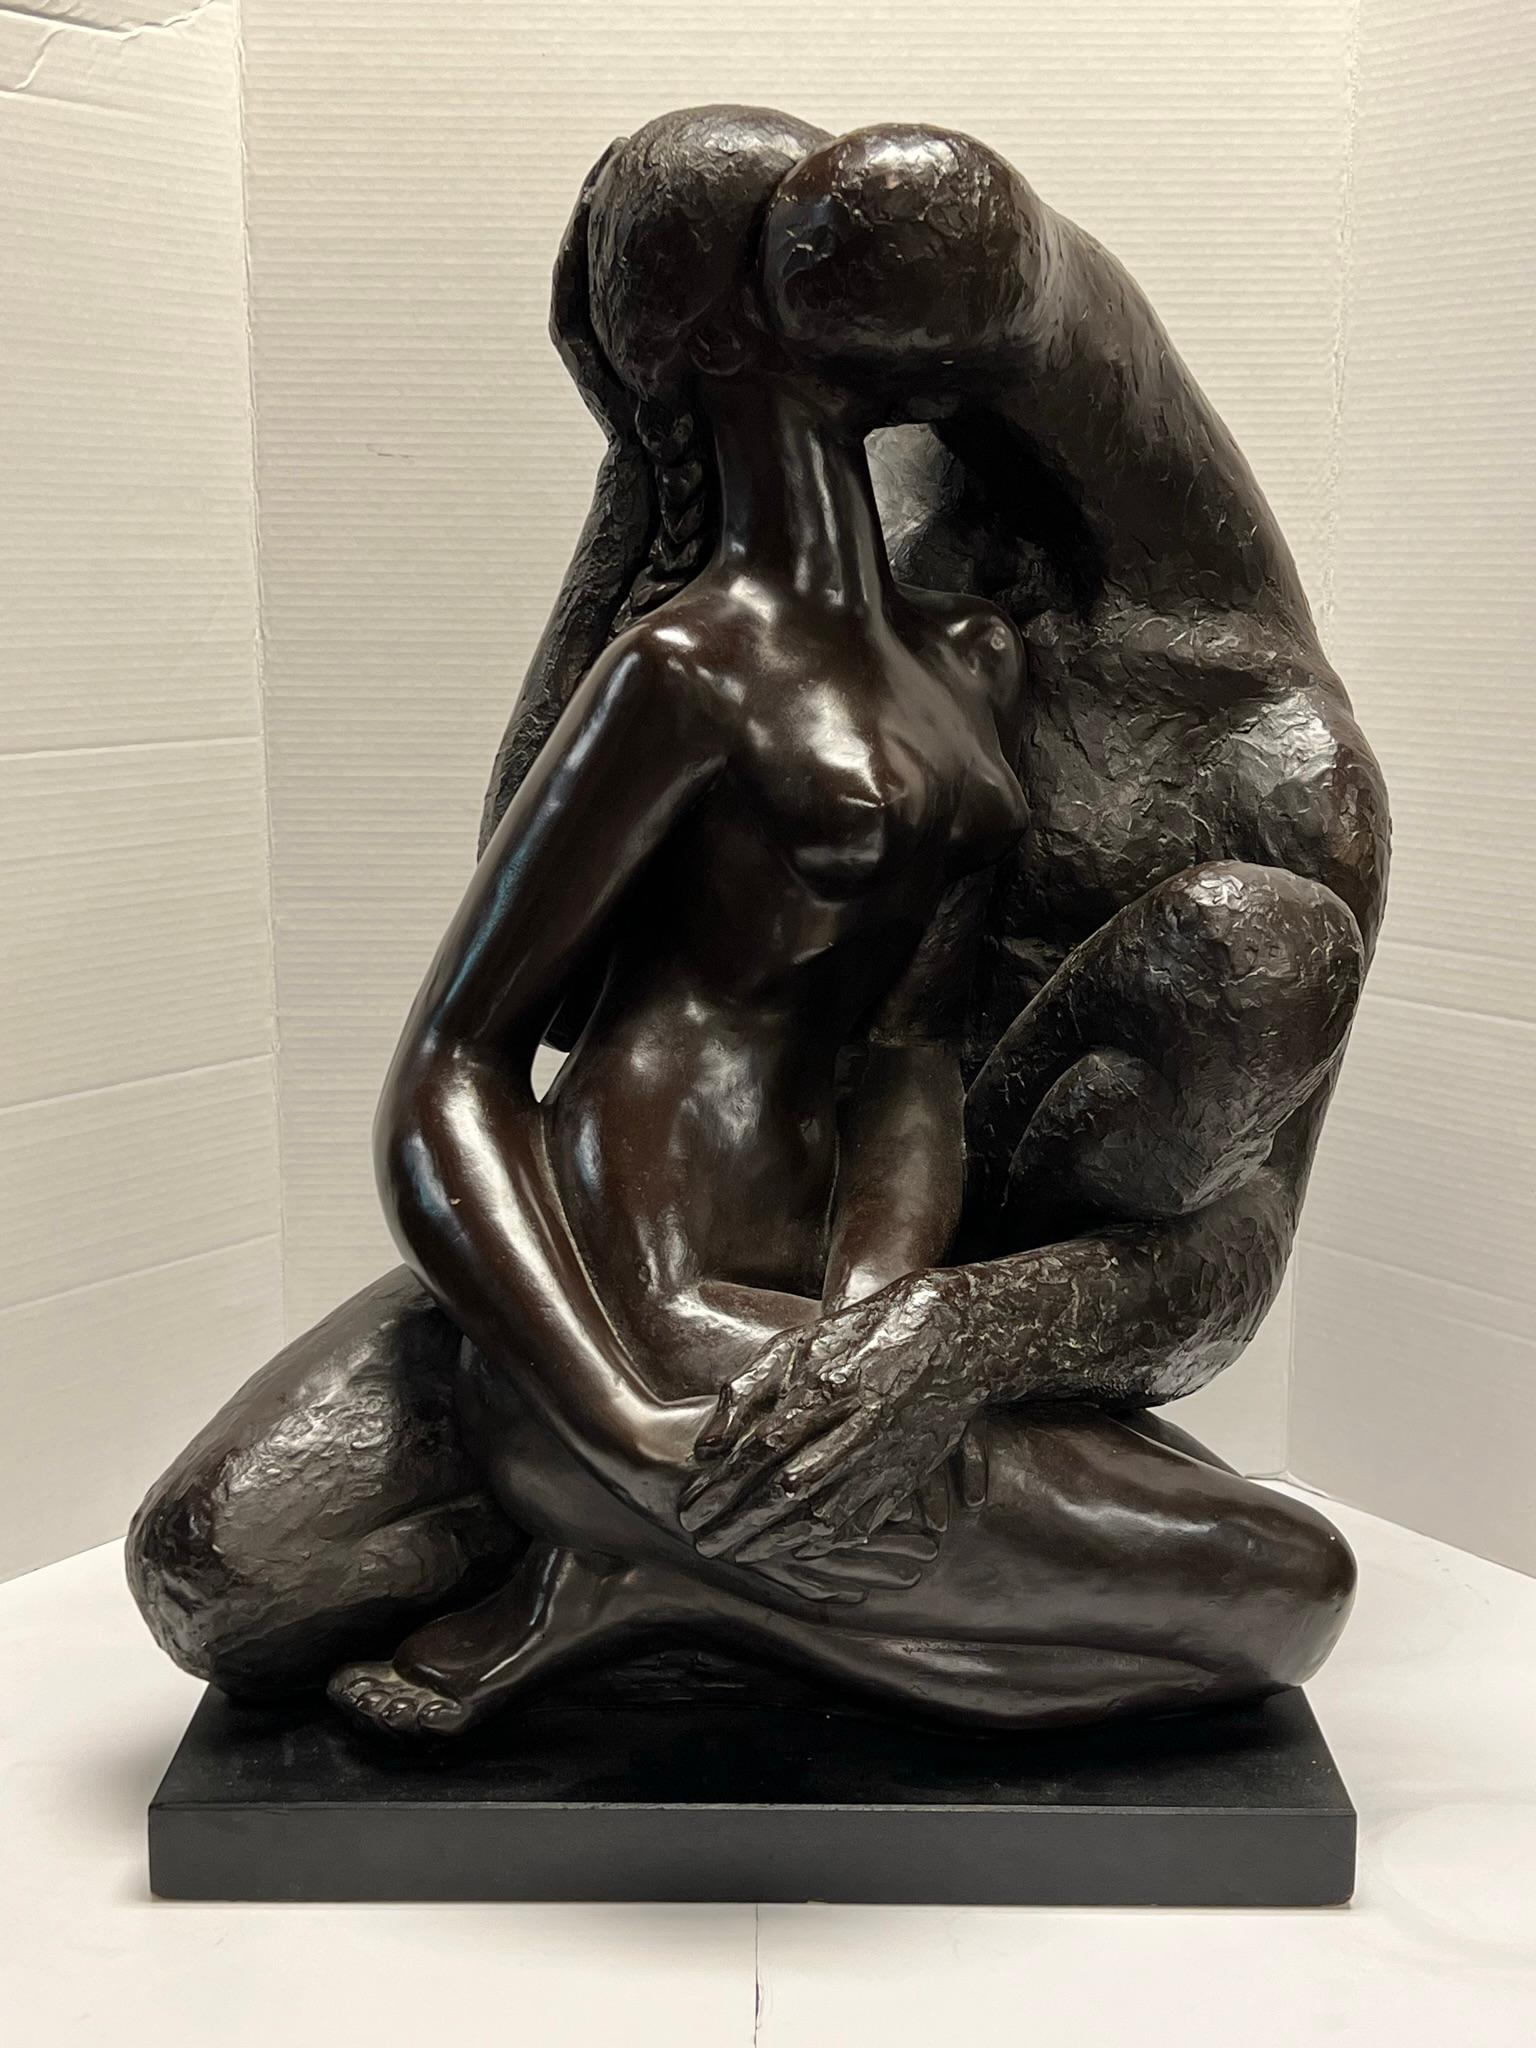 Sculpture en plâtre peint de style brutaliste du sculpteur cubain Manuel Carbonell (1918-2011), représentant des figures assises et enlacées d'un homme grotesque et abstrait embrassant une jolie femme nue.  Produit par Austin Productions, vers les